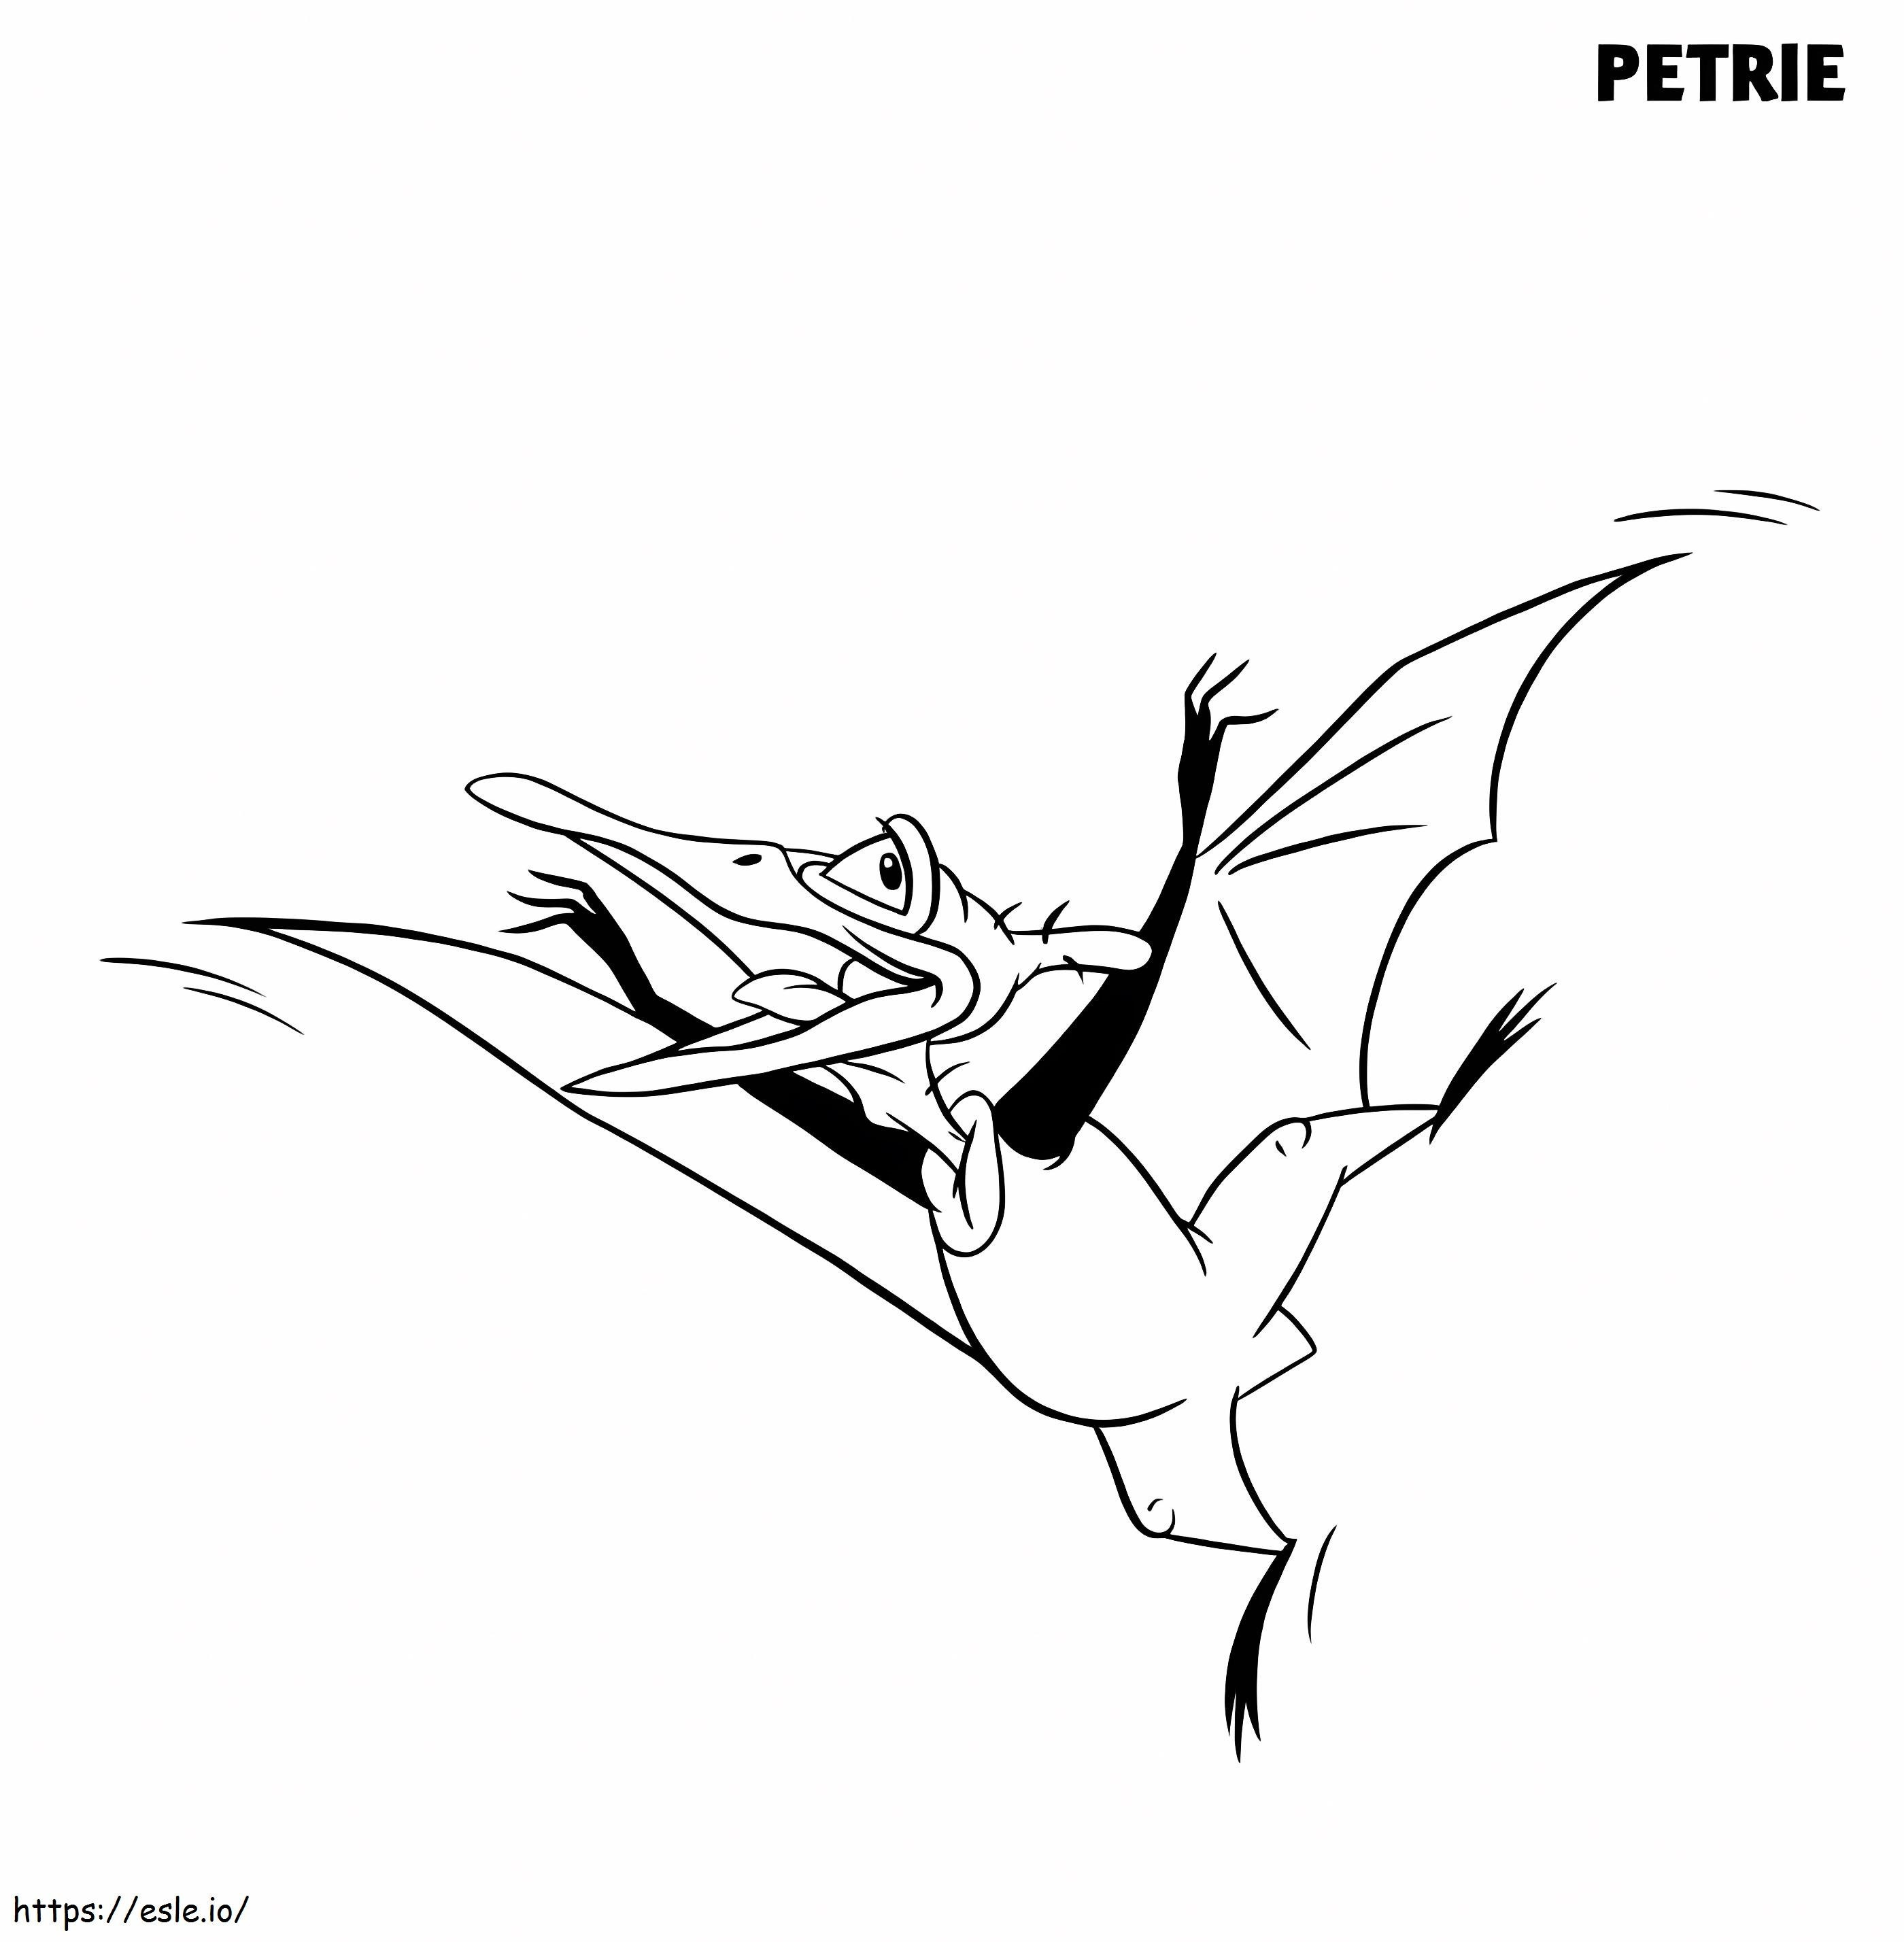 Petrie Land antes do tempo para colorir